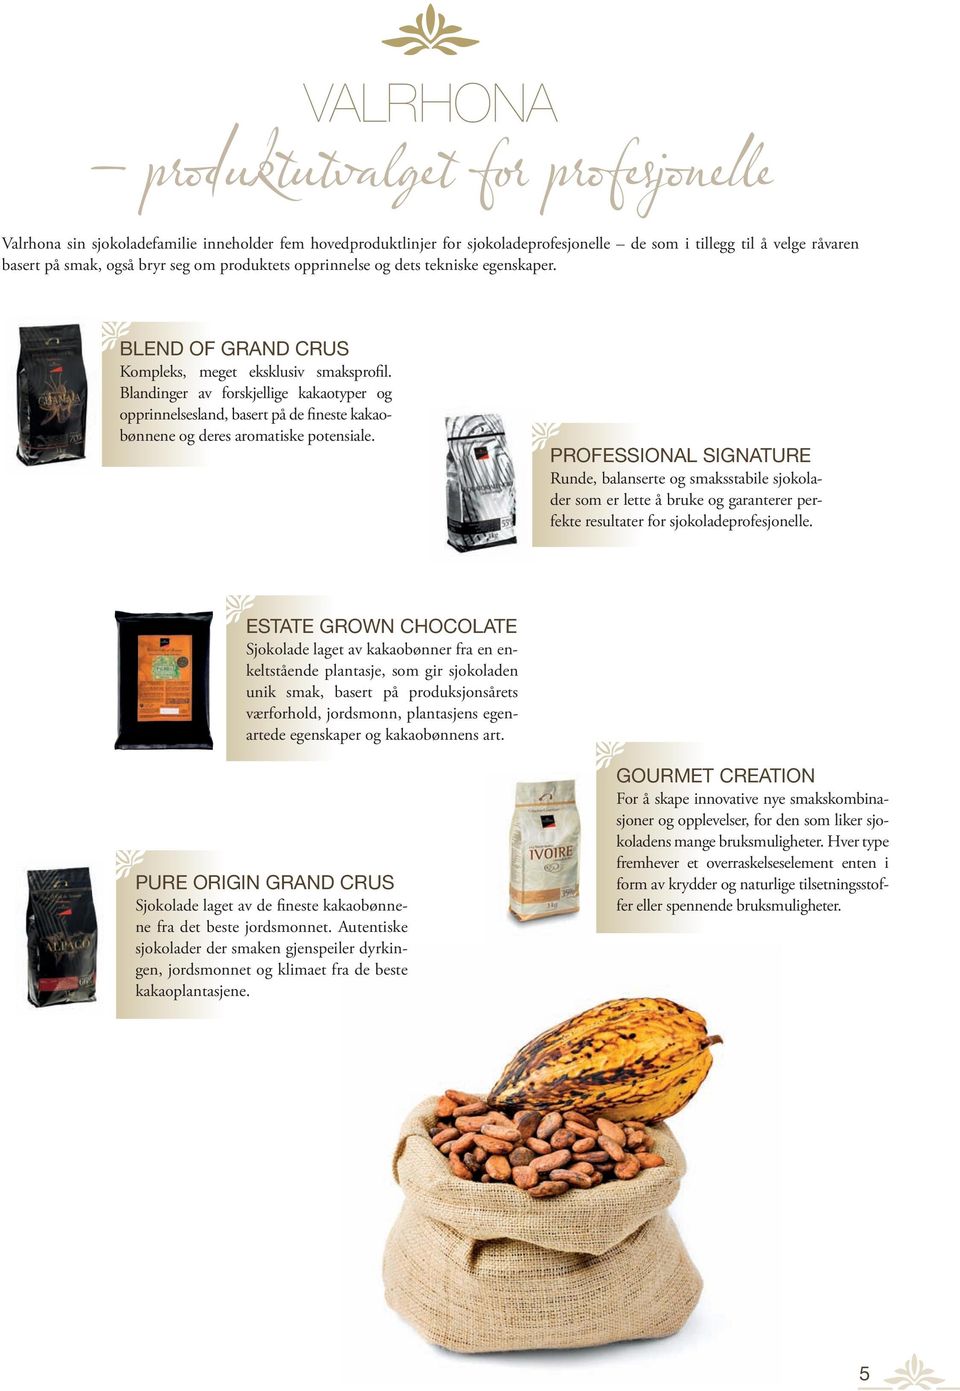 Blandinger av forskjellige kakaotyper og opprinnelsesland, basert på de fineste kakaobønnene og deres aromatiske potensiale.